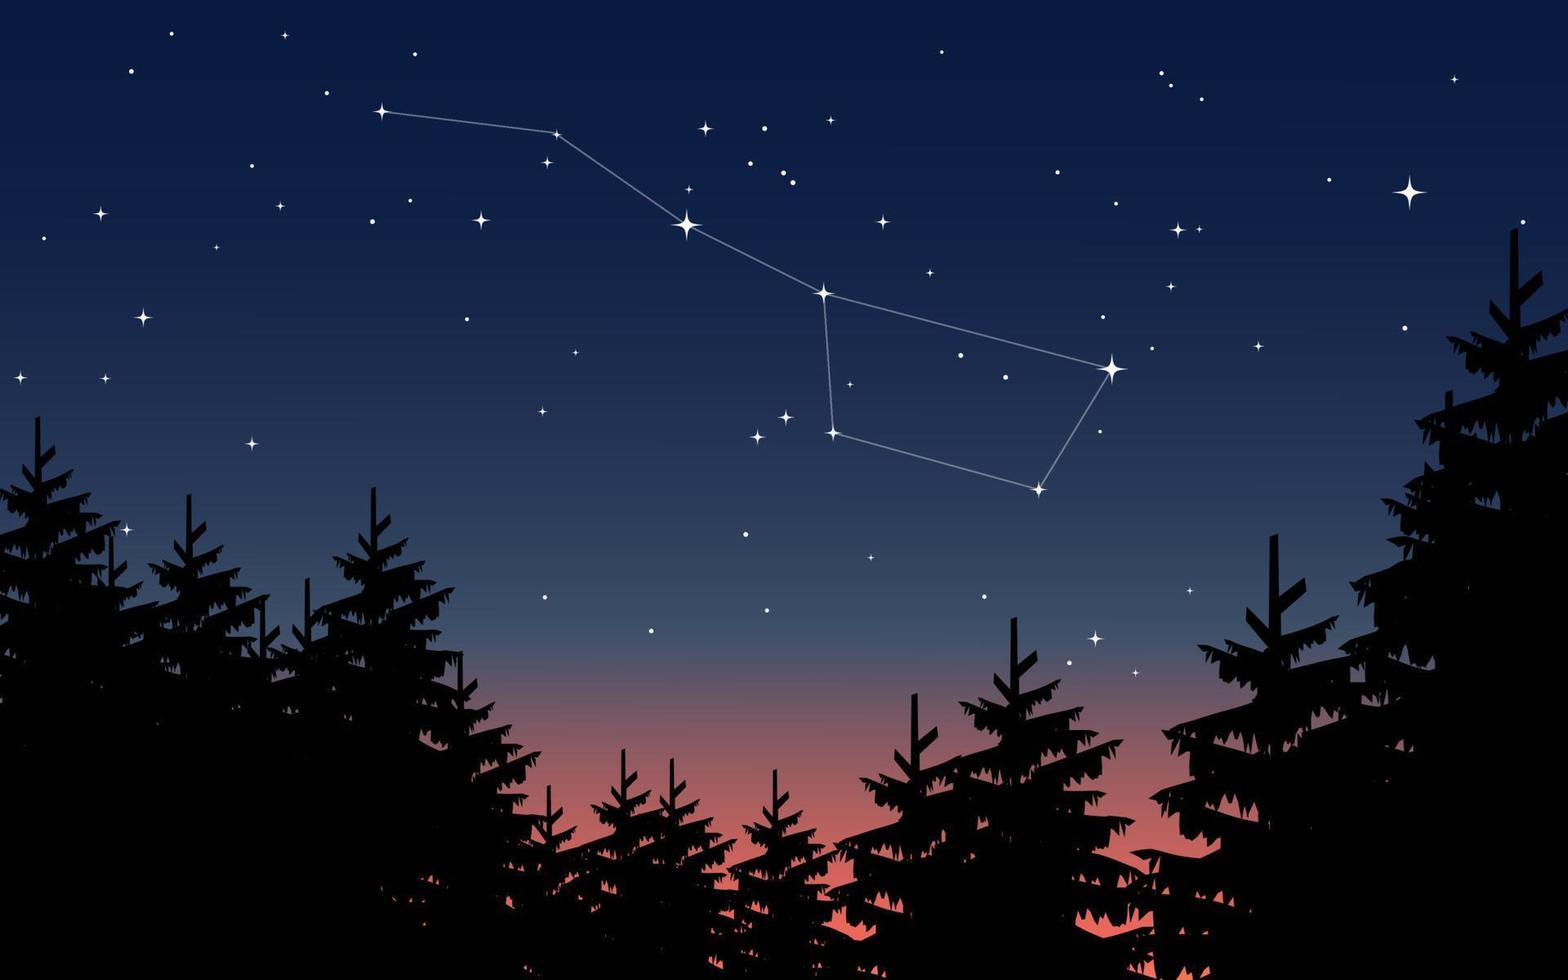 nachtelijke hemel in dennenbos met sterrenbeeld vector